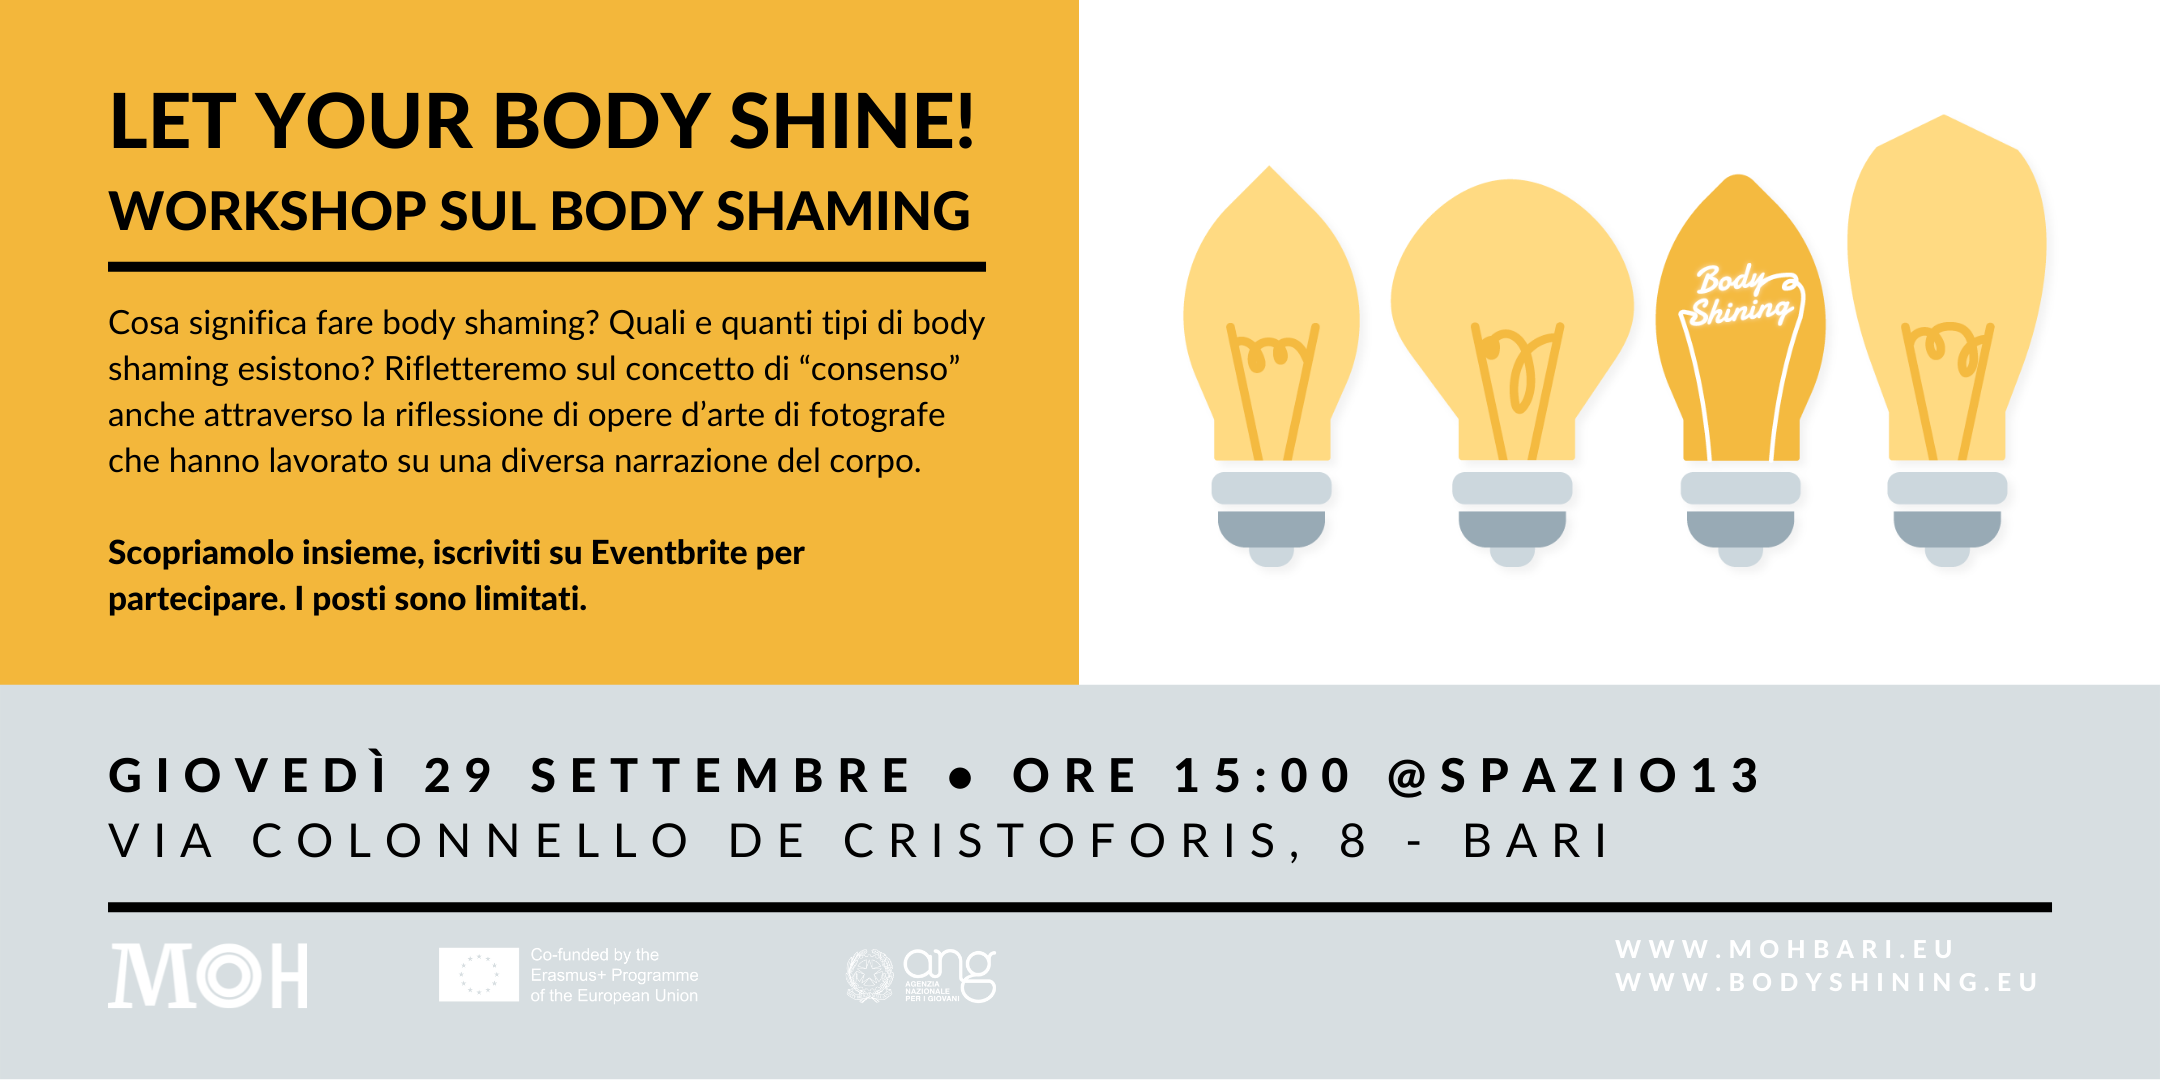 Al momento stai visualizzando Workshop sul body shaming @Spazio13 | Giovedì 29 settembre